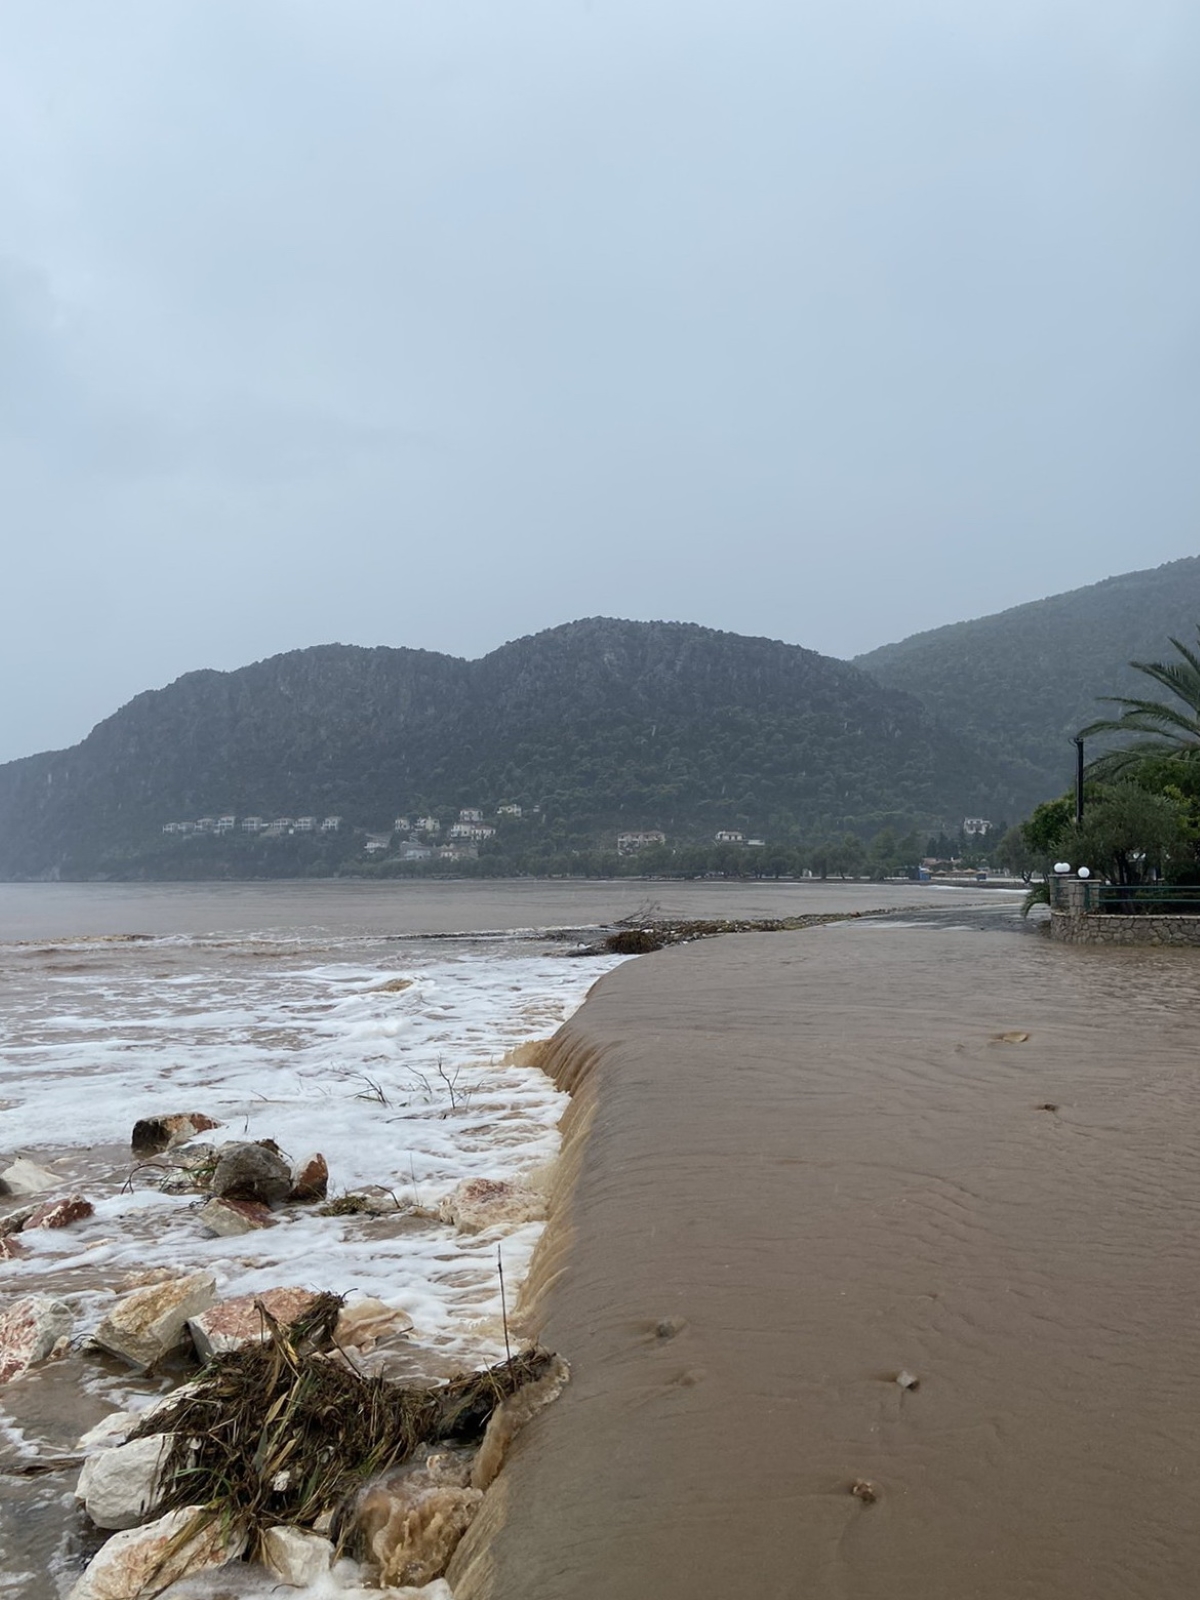 Δήμος Νεμέας: Αιτήσεις για τους παραγωγούς που έχουν υποστεί ζημιές από τις βροχές